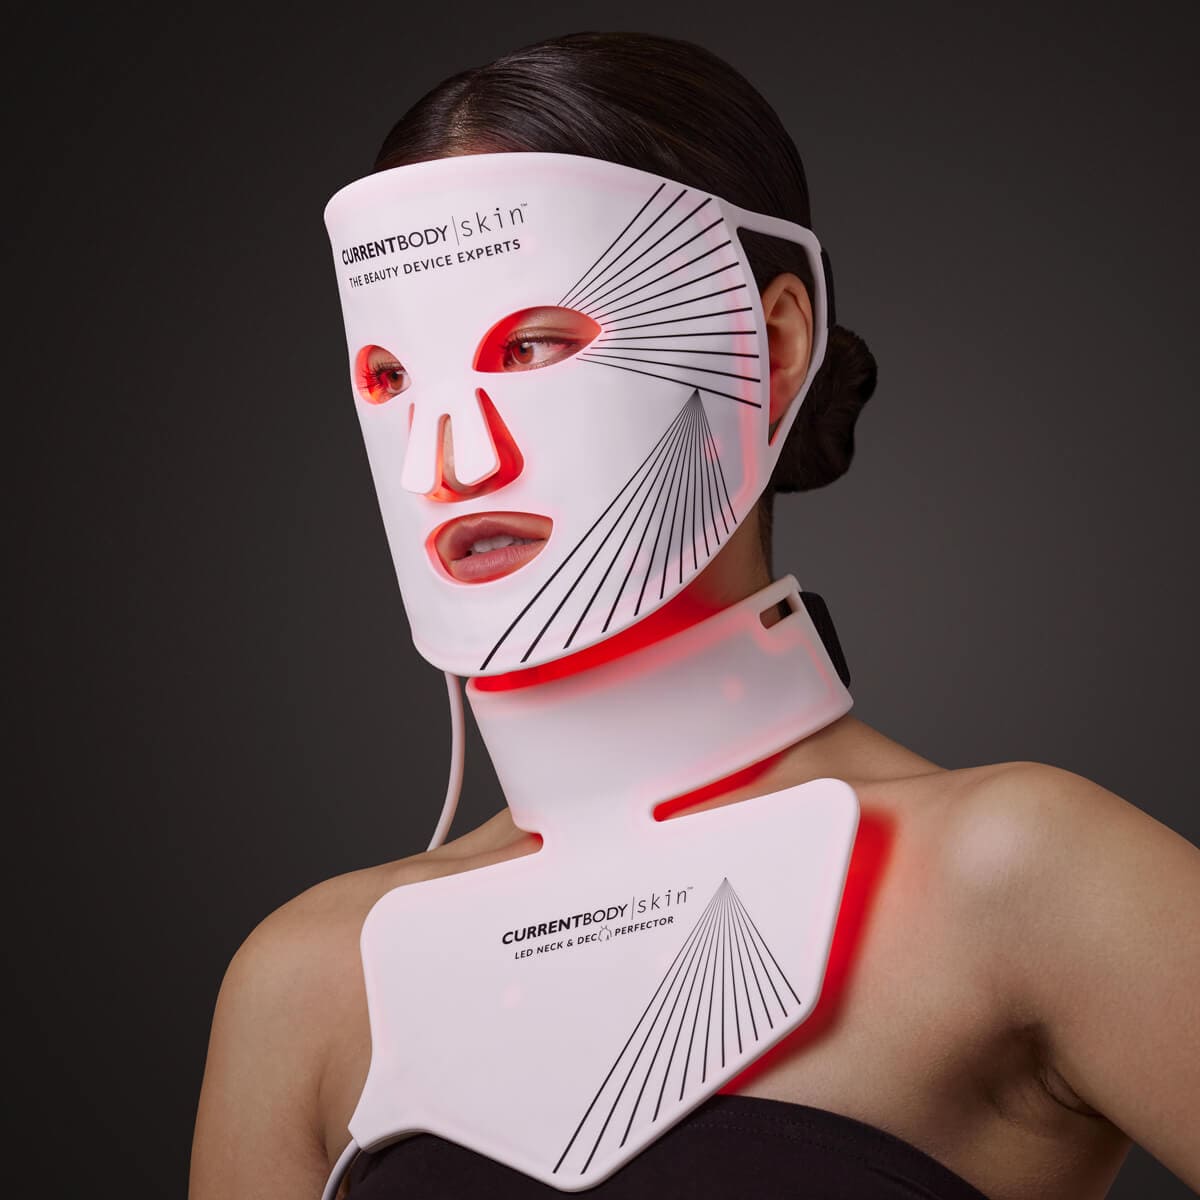 CurrentBody Skin Kit complet pour le visage et le cou | CurrentBody FR